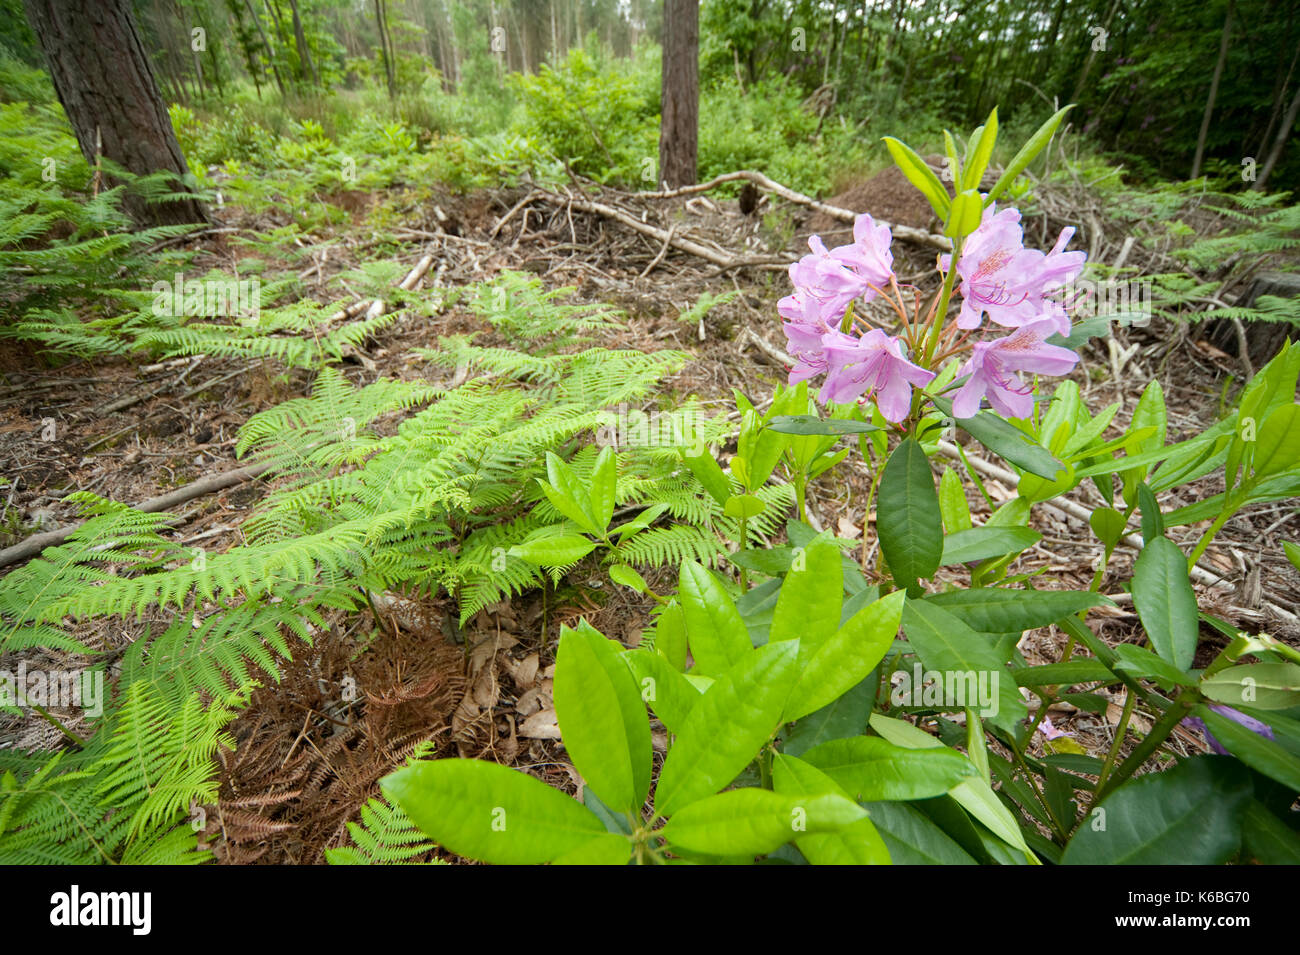 Rhododendron Strauch wächst in Wäldern, Coppicing zur Aufbewahrung bei Blean Woodlands, Kent Großbritannien für Heide Fritillaryschmetterling, Mellicta athalia, einer Stockfoto